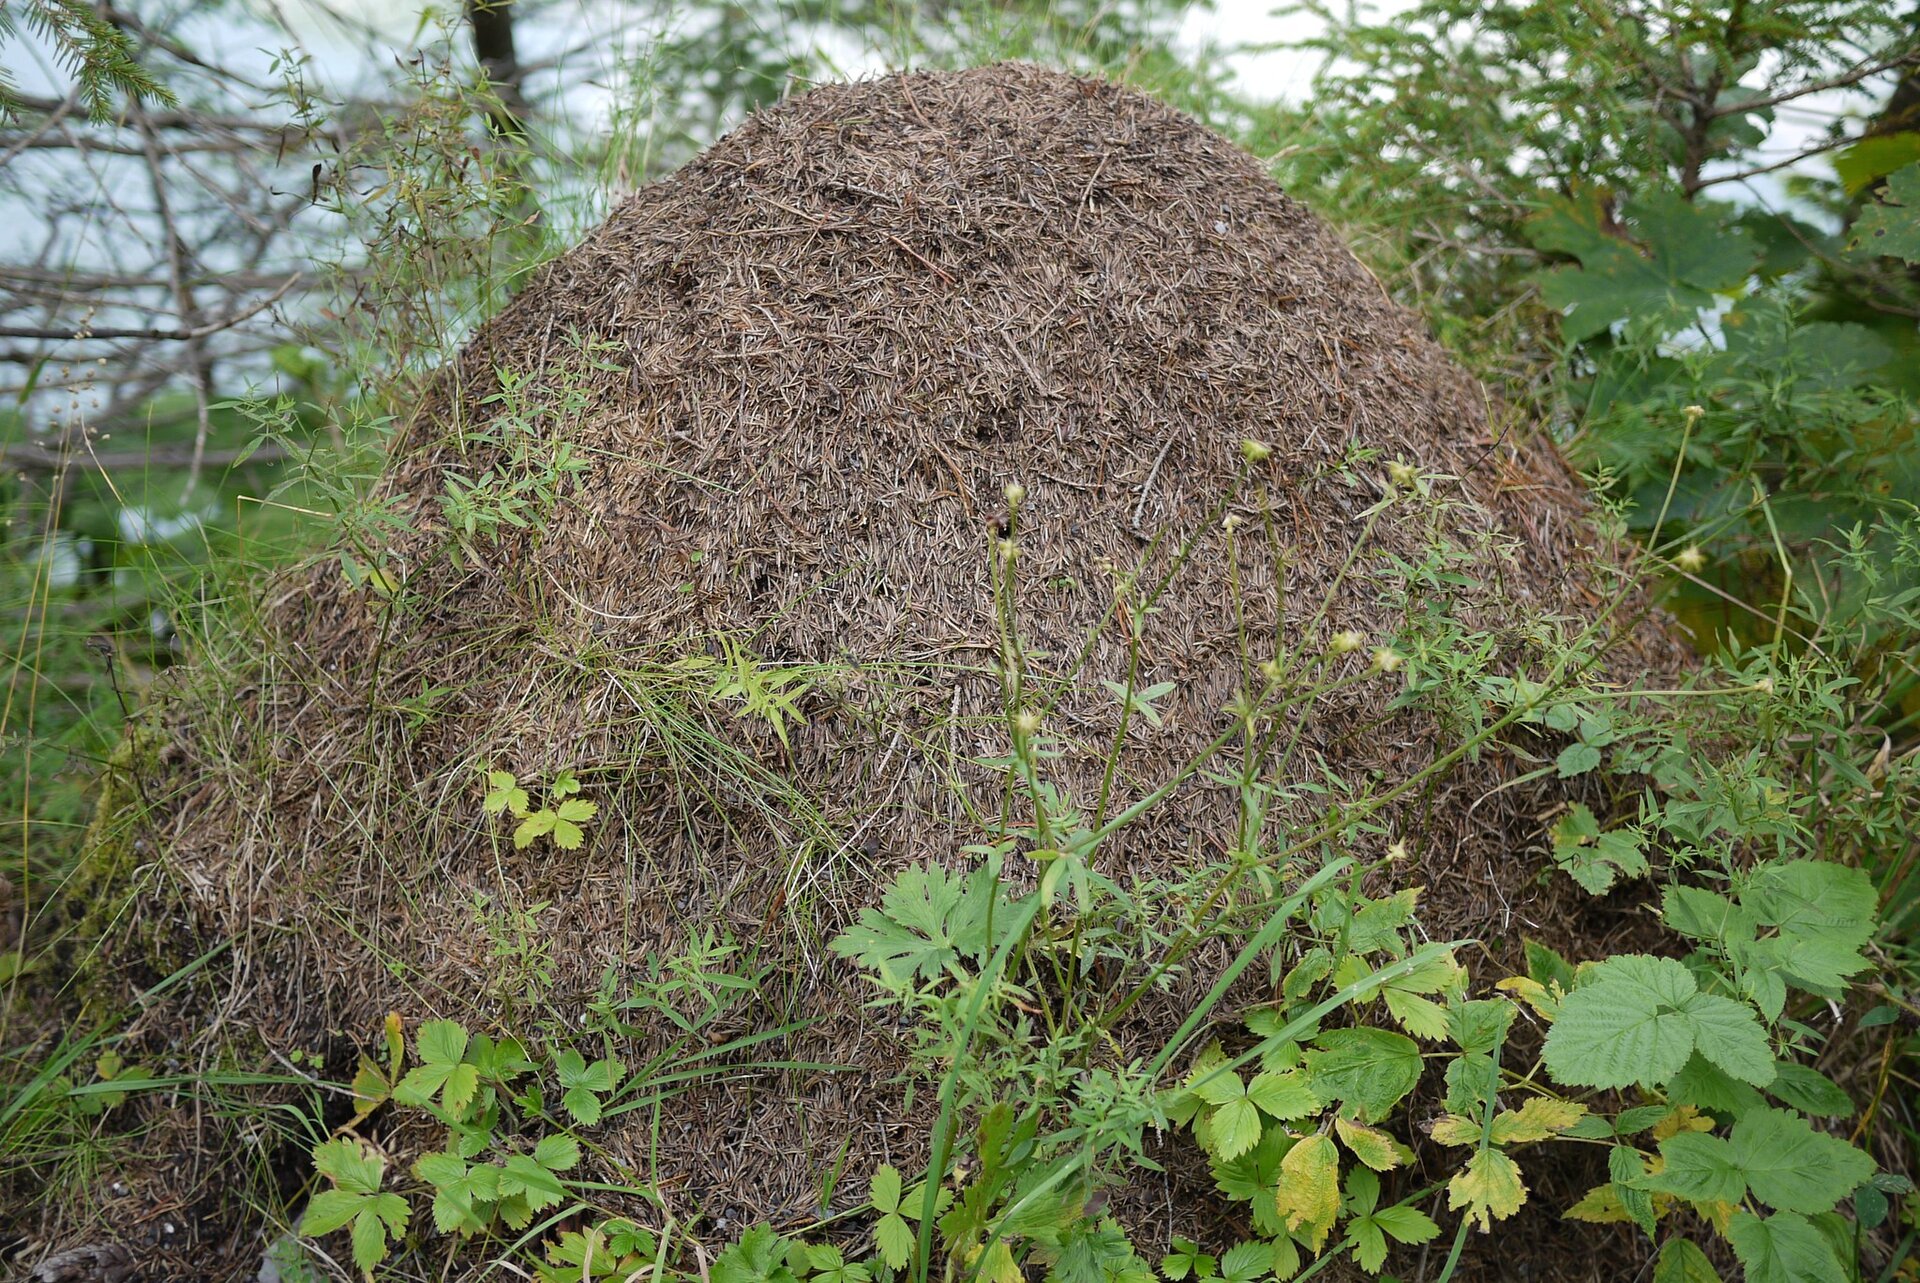 Zdjęcie przedstawia wysoki kopiec — to mrowisko. Zewnętrzna powierzchnia kopca jest pokryta igłami z drzewa.